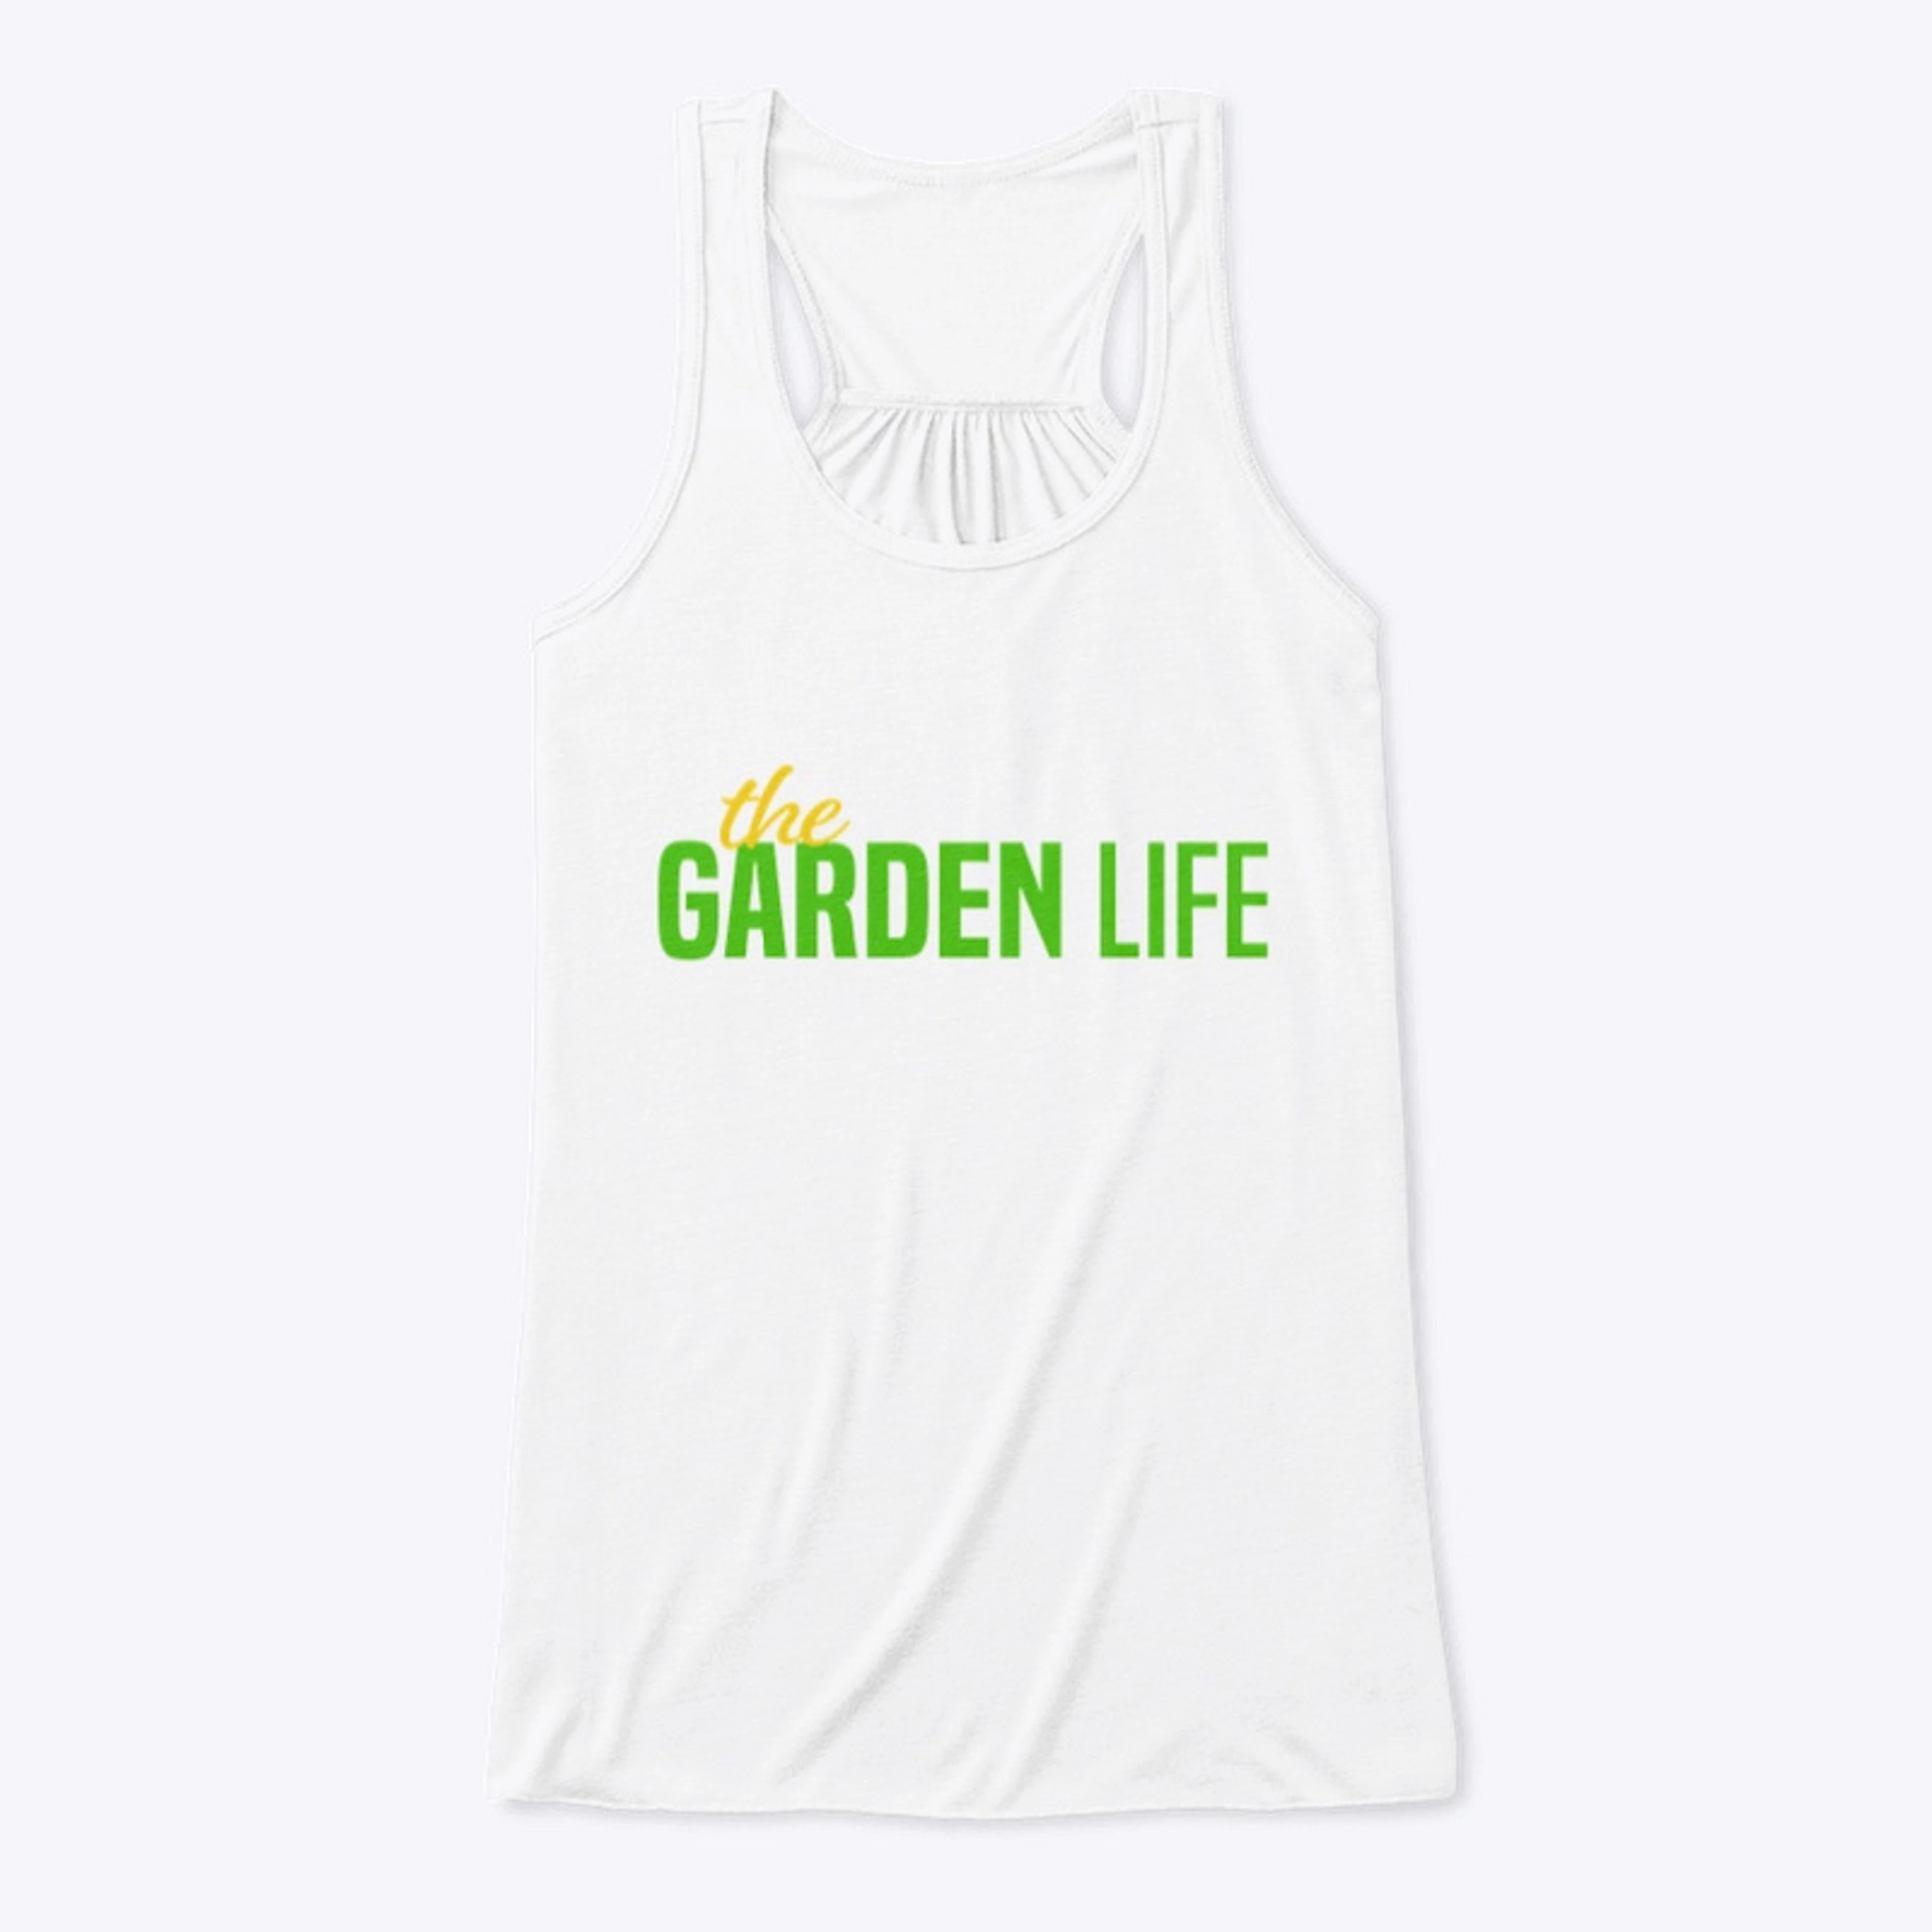 The Garden Life Official T-Shirt